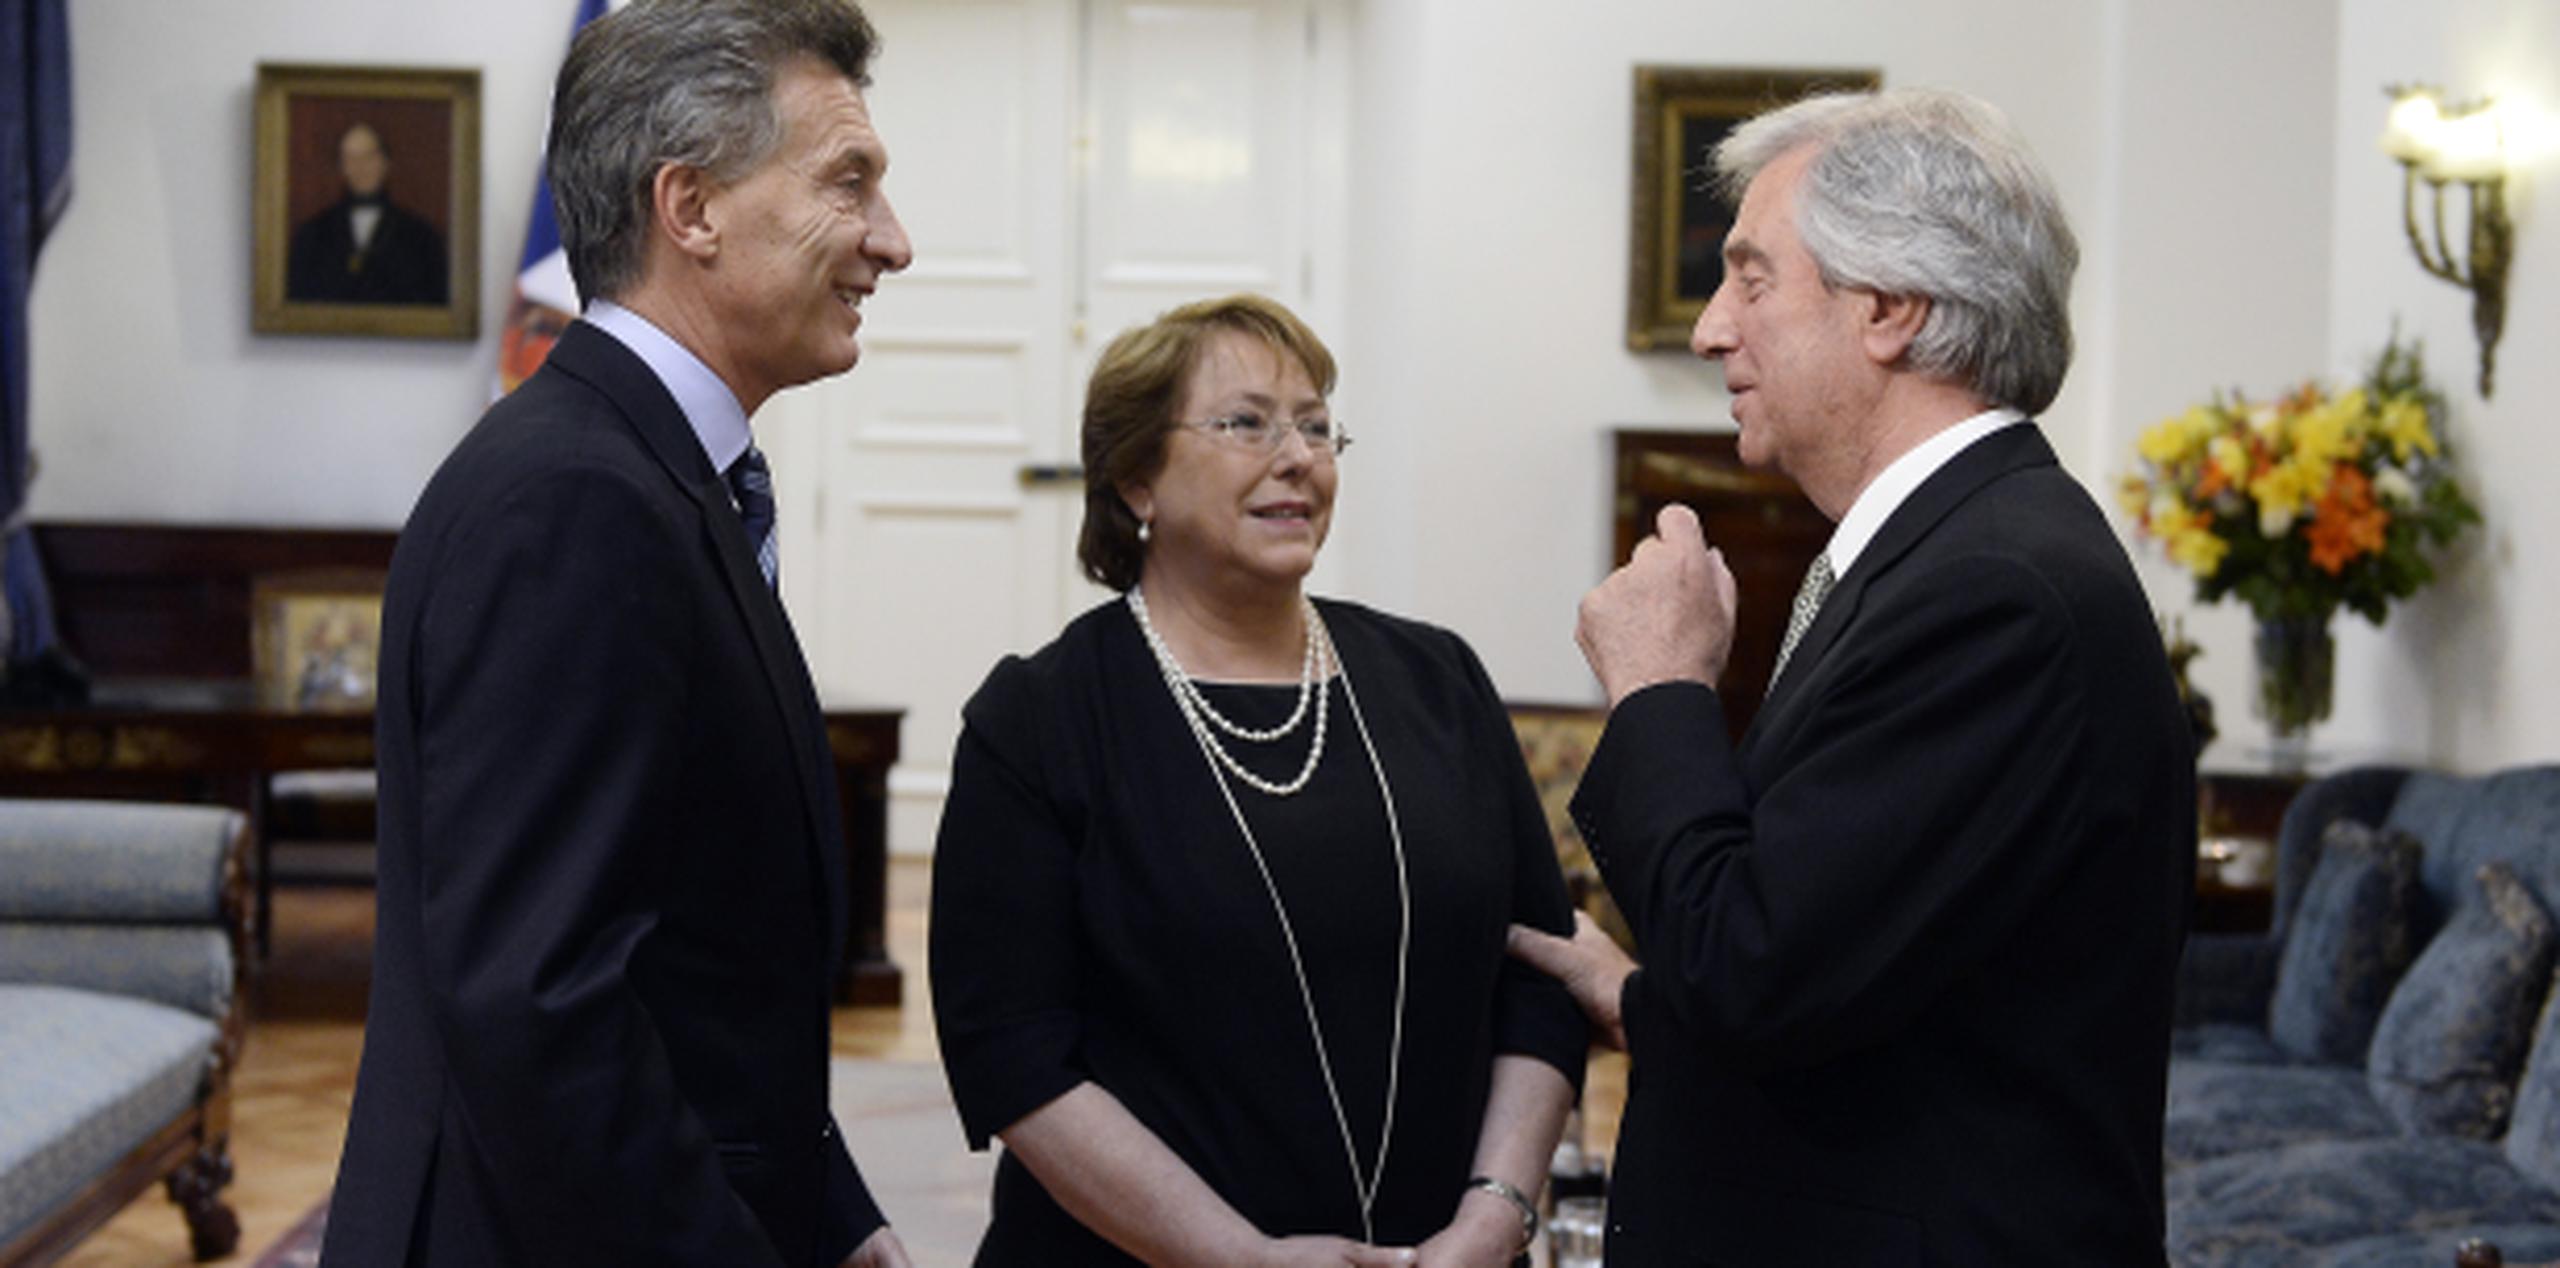 A días de su juramento como presidente, Macri (izquierda) ya ha comenzado a compartir con otros dignatarios como Michelle Bachelet, de Chile, y Tabaré Vázquez, de Uruguay. (EFE)